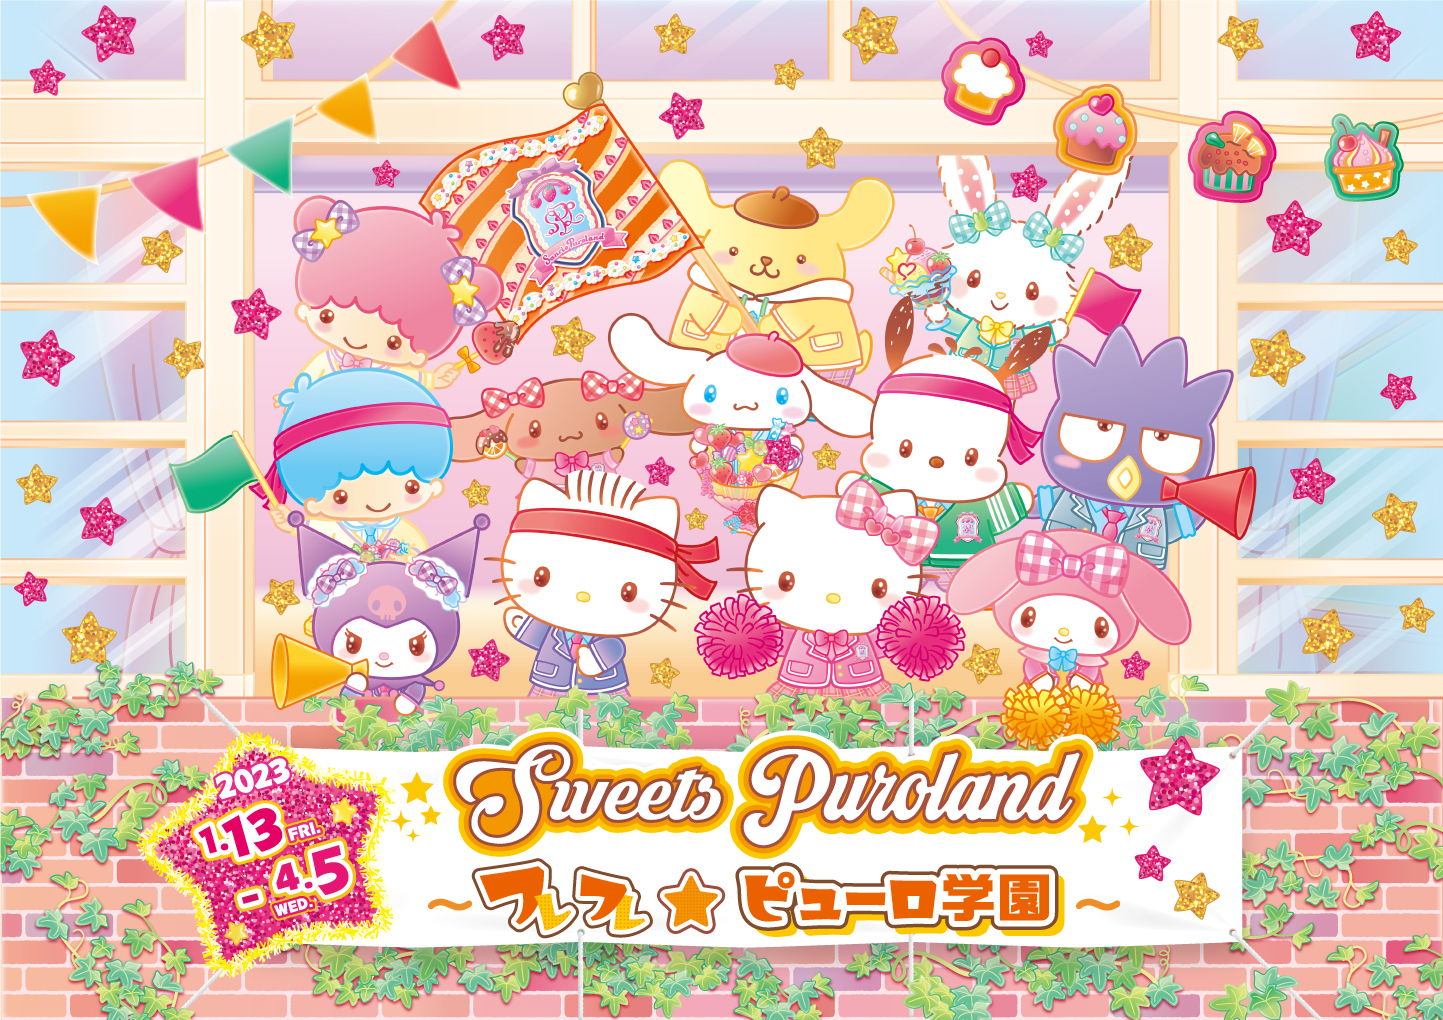 サンリオピューロランドにて「Sweets Puroland～フレフレ☆ピューロ